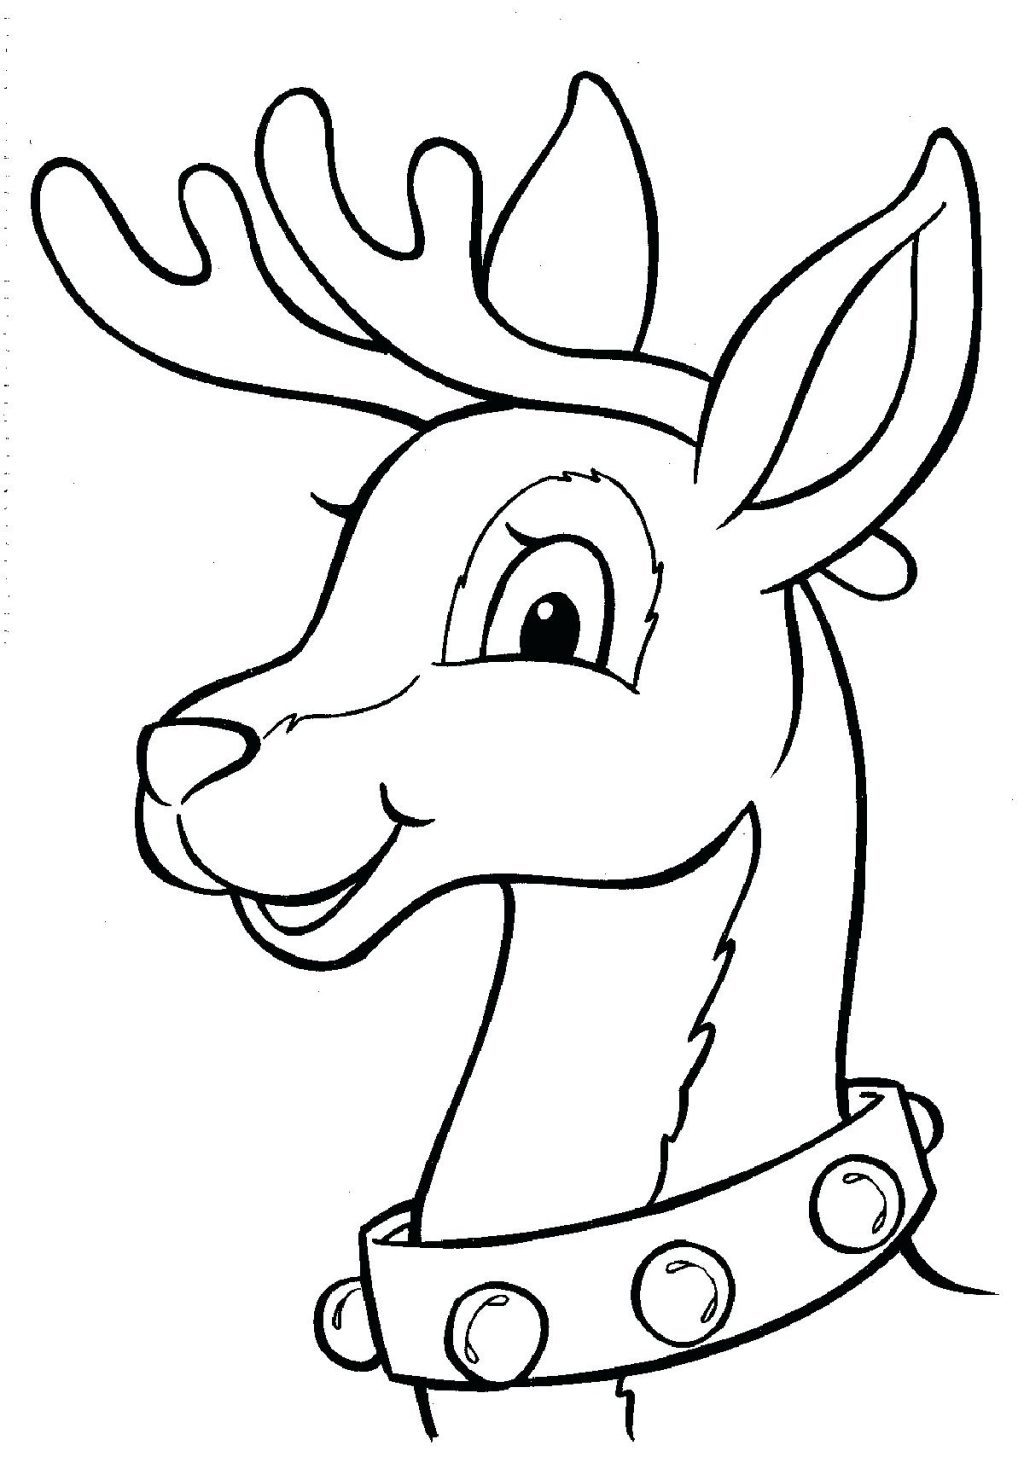 Reindeer Coloring Pages Free at GetDrawings Free download